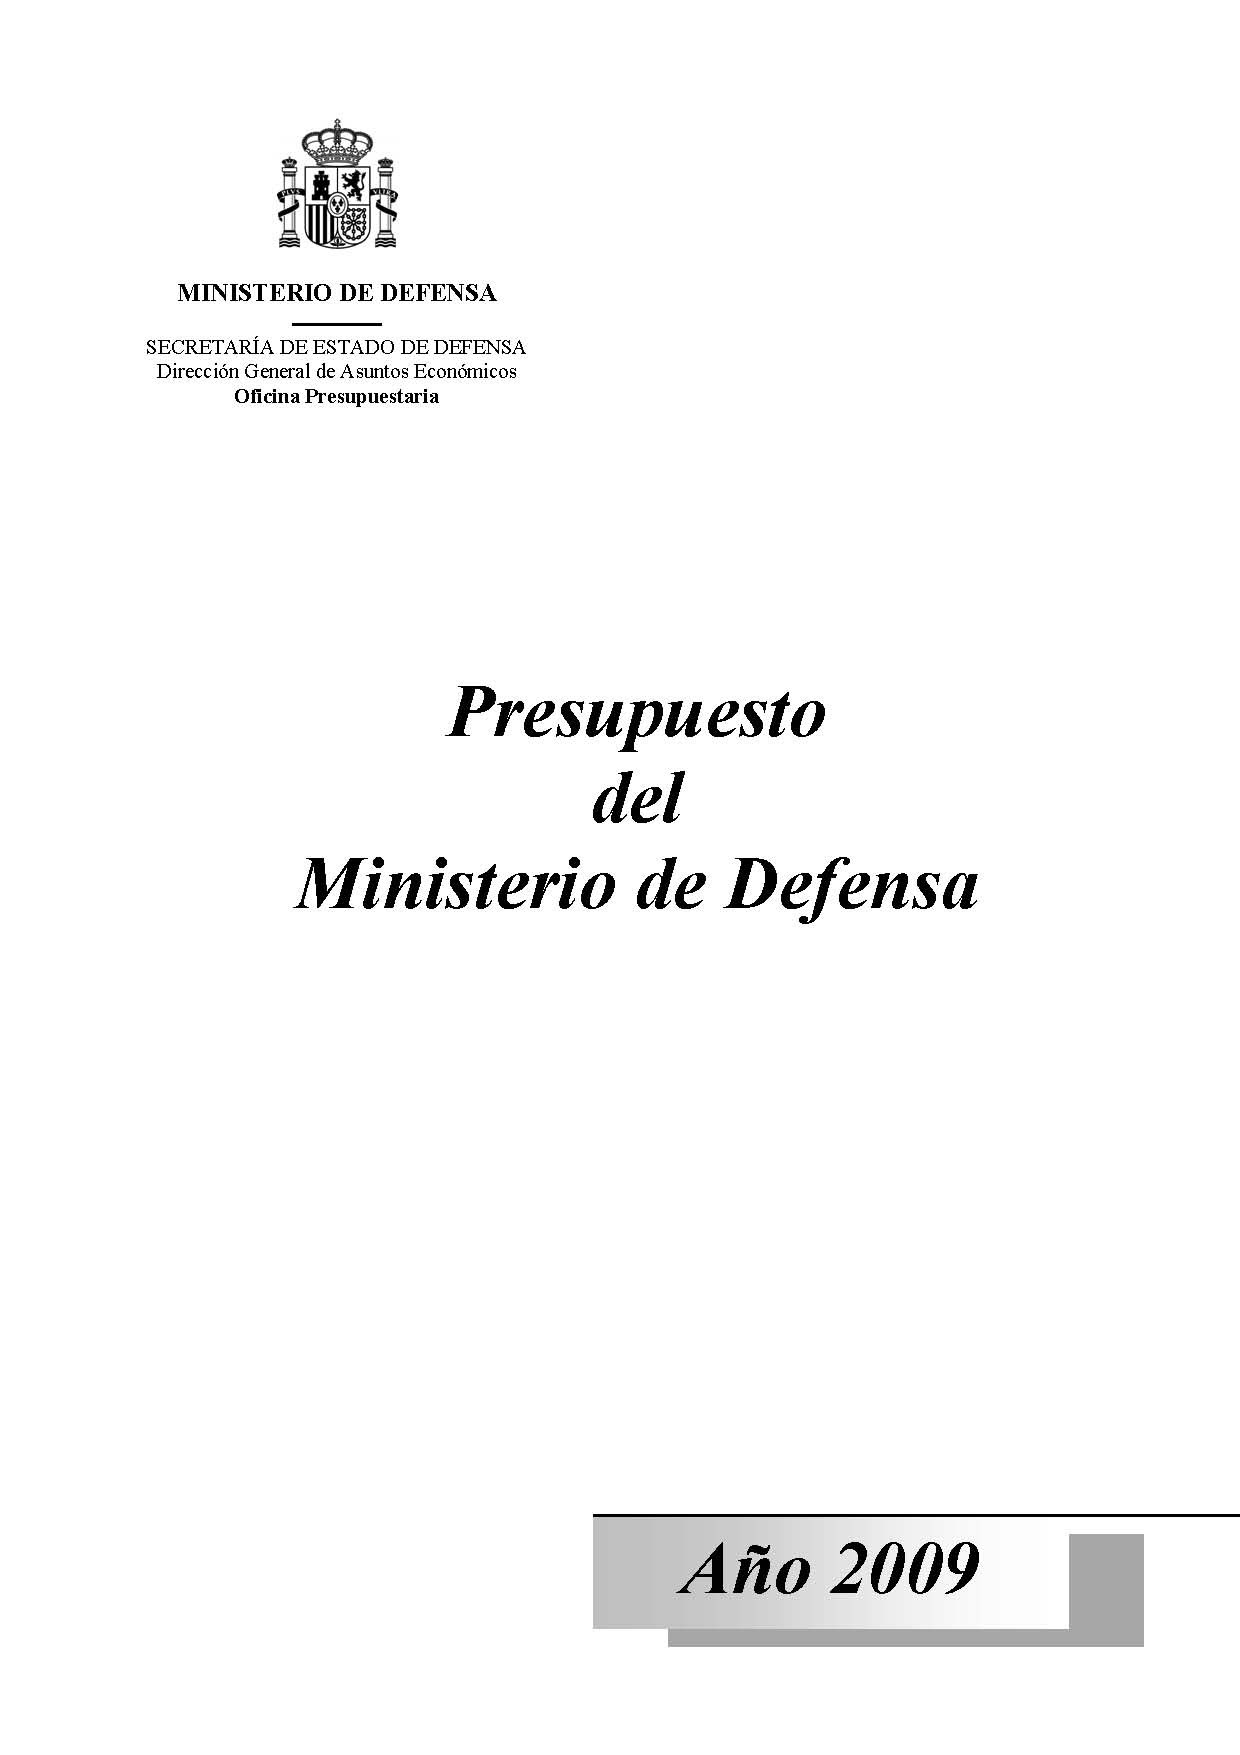 PRESUPUESTO DEL MINISTERIO DE DEFENSA. AÑO 2009